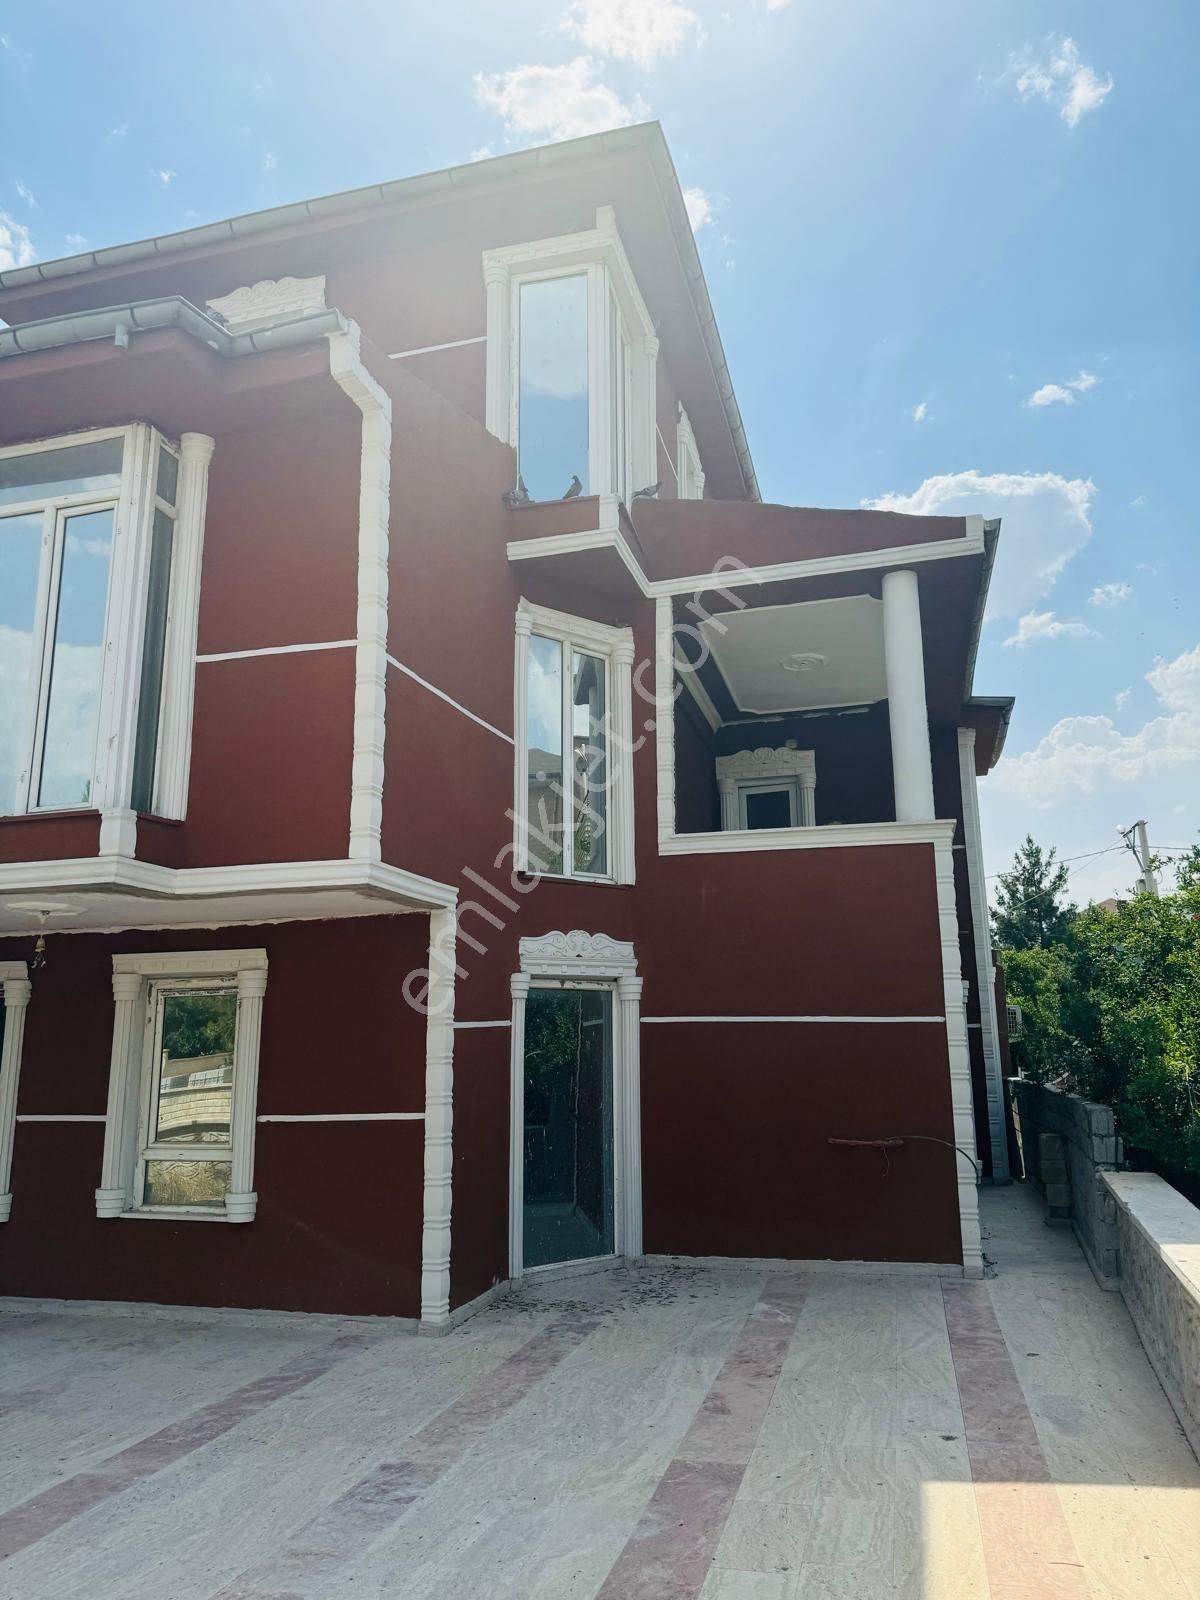 Viranşehir Emiroğlu Satılık Daire Şanlıurfa Viranşehir Özal mahallesi satılık lüx villa